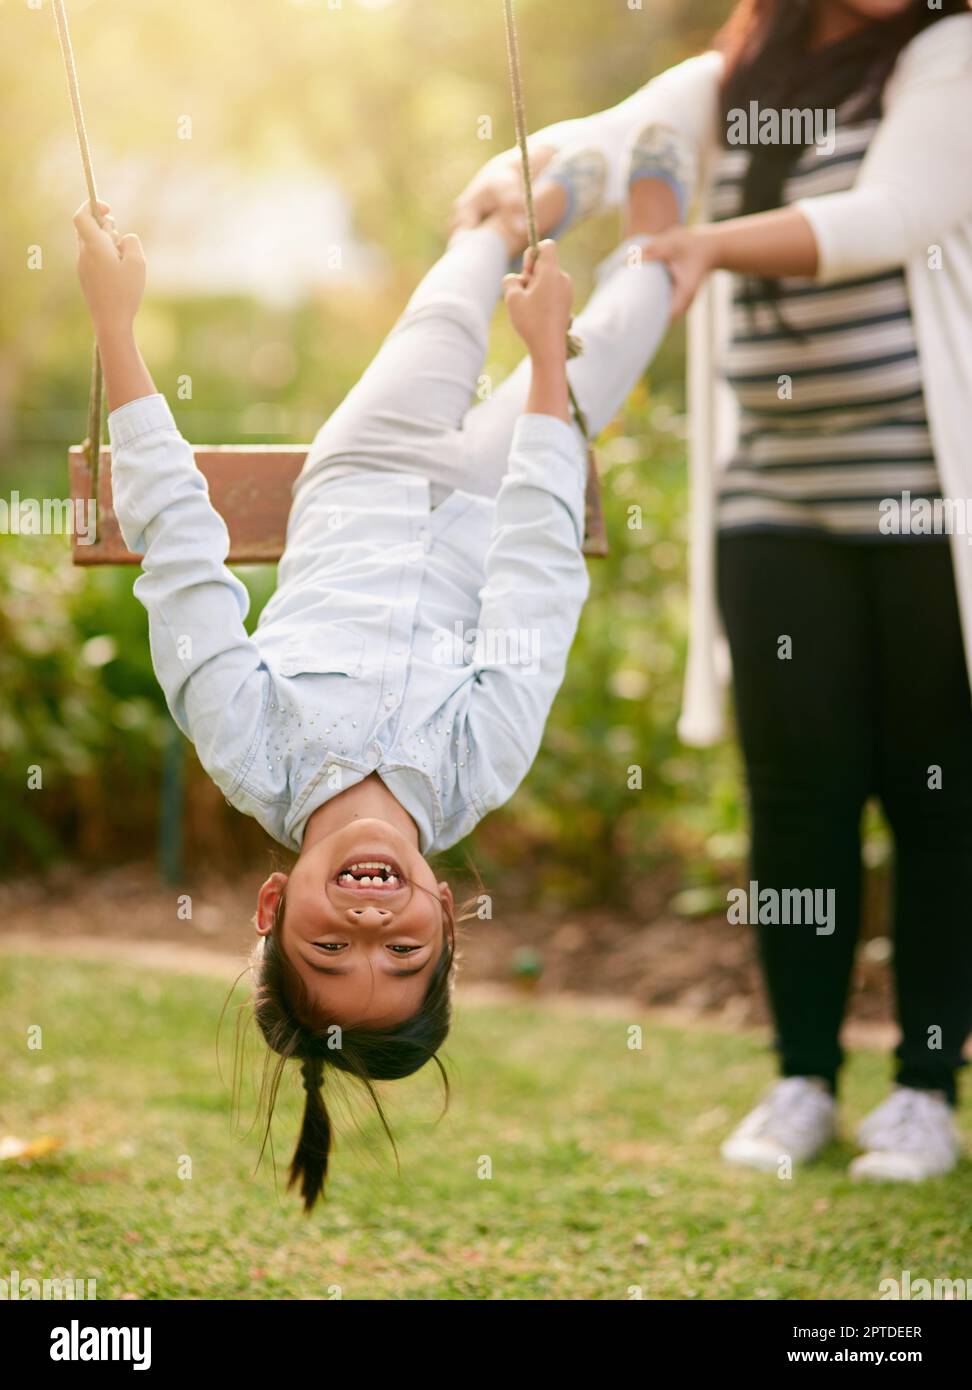 Nach oben, nach unten. Porträt eines kleinen Mädchens, das draußen mit seiner Mutter im Hintergrund auf einer Schaukel spielt Stockfoto